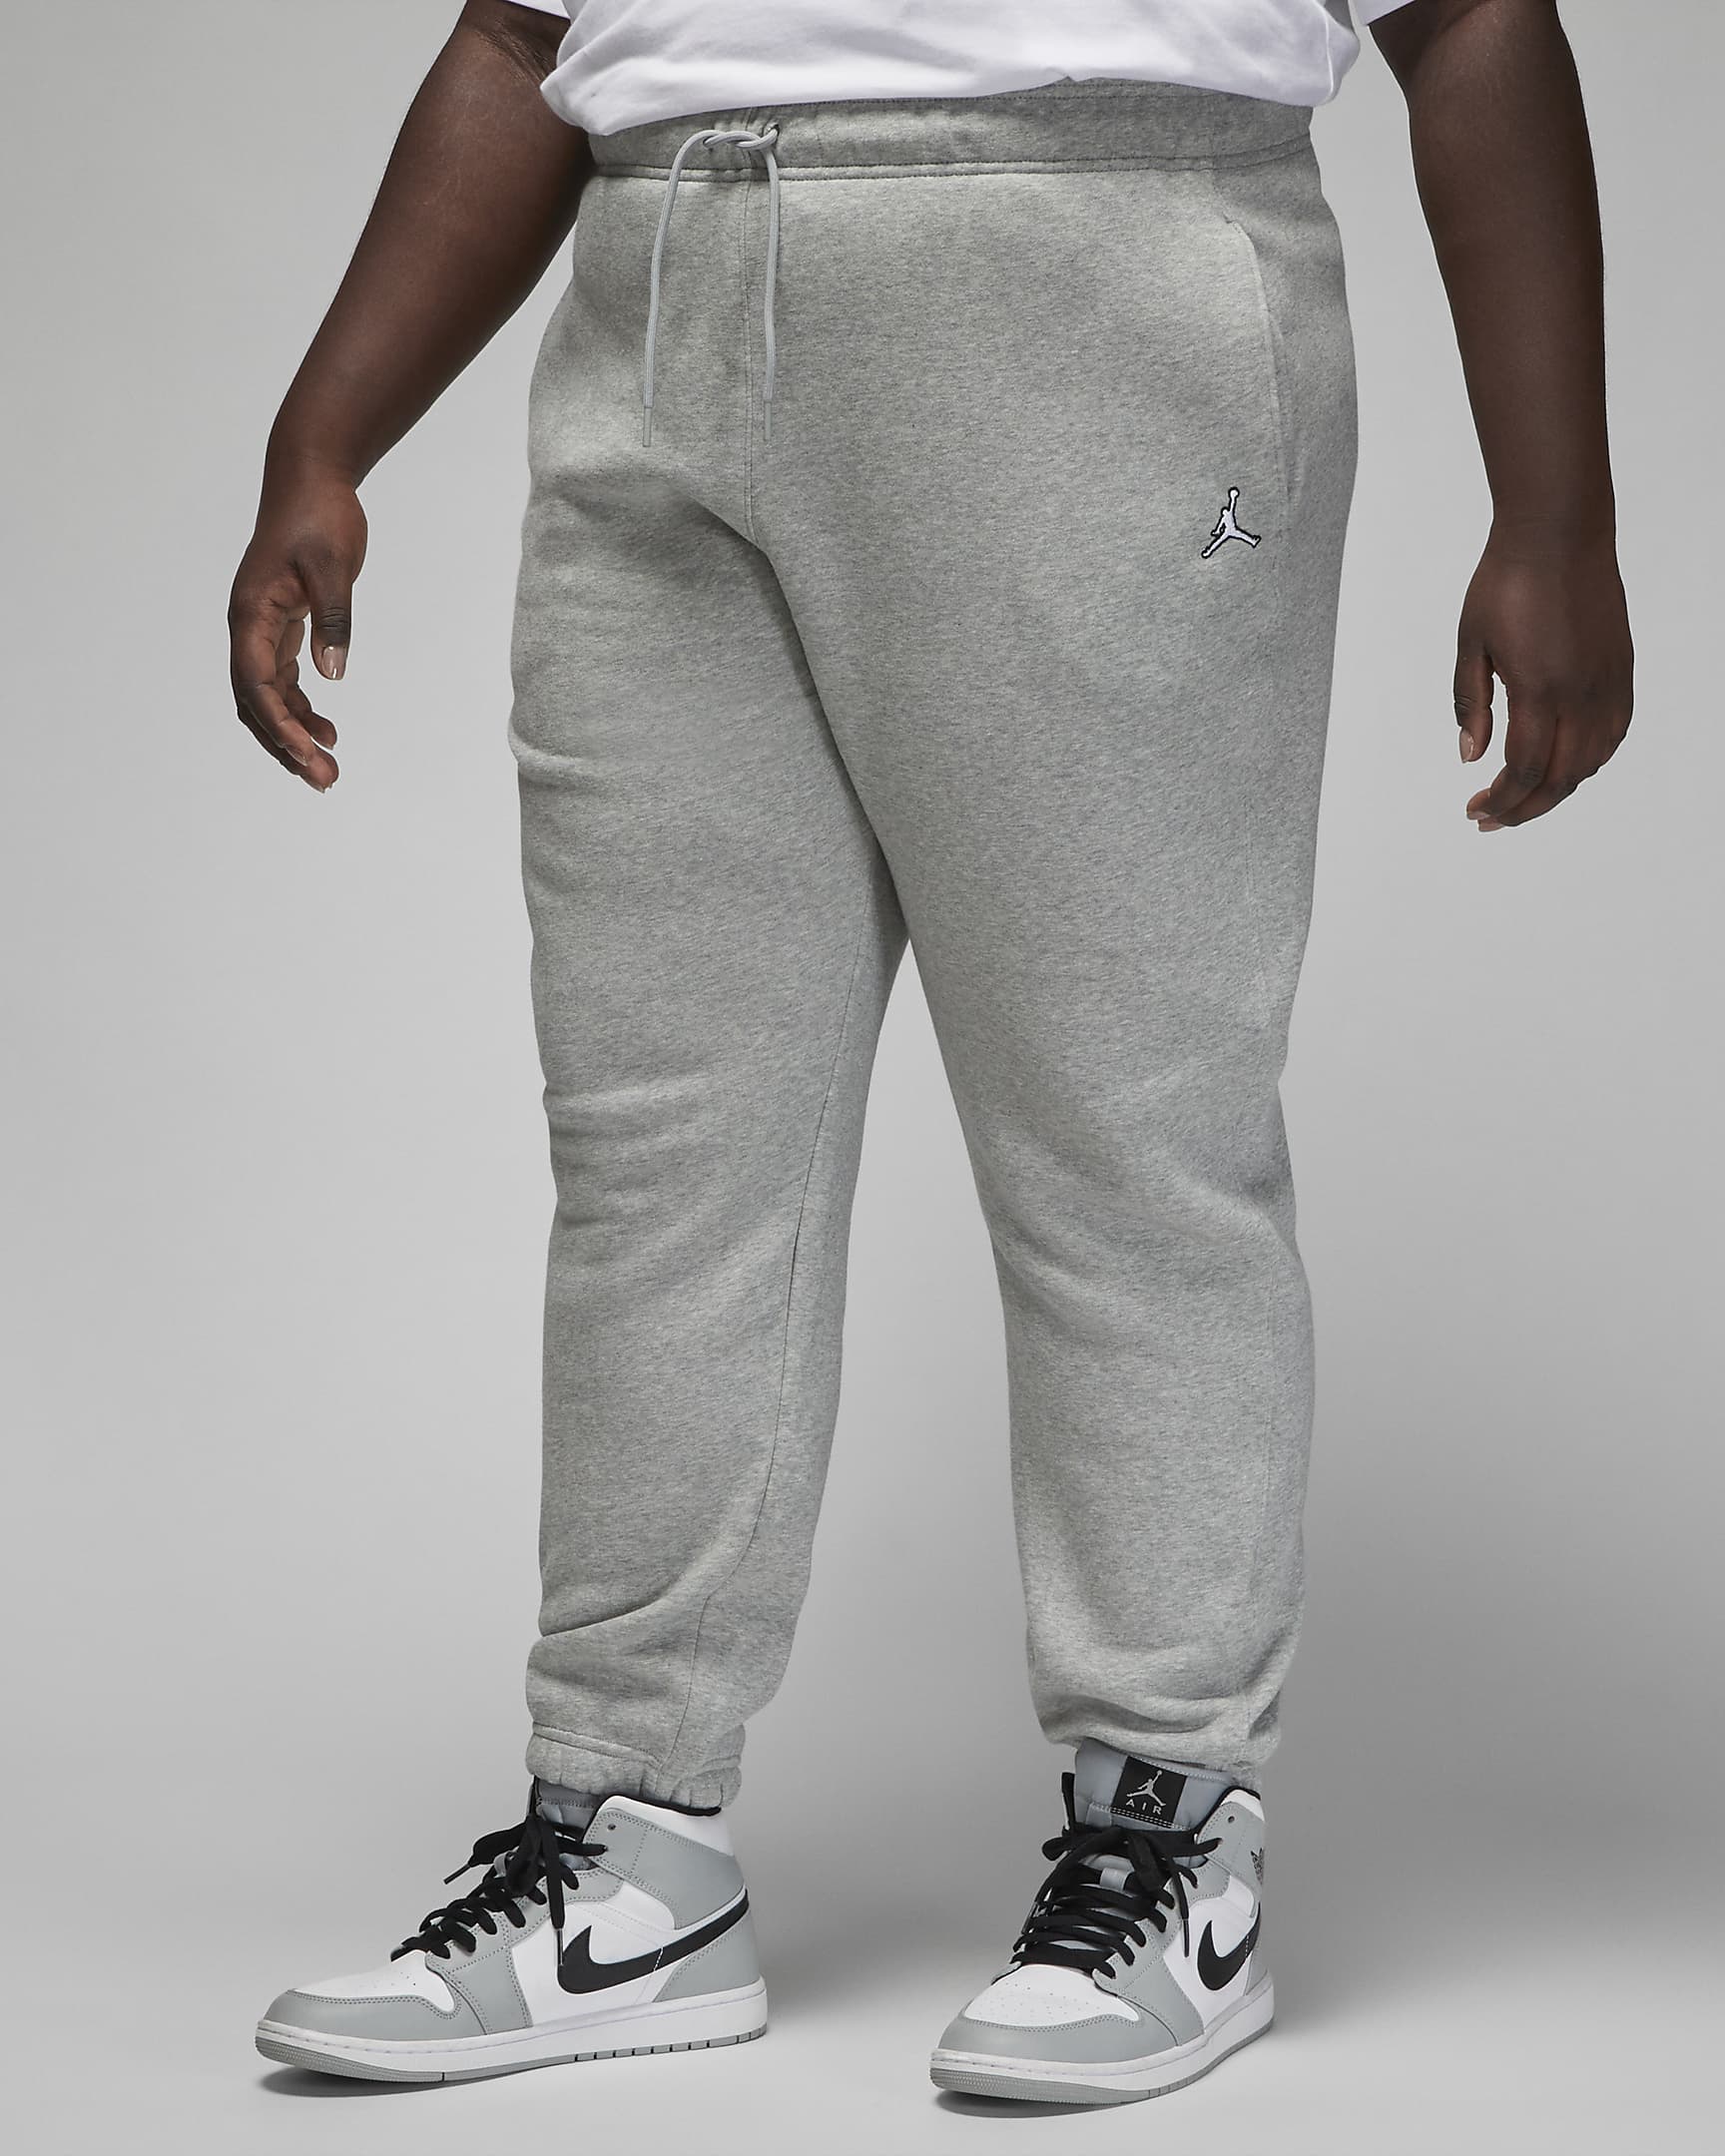 Jordan Brooklyn Women's Fleece Trousers (Plus Size) - Dark Grey Heather/White